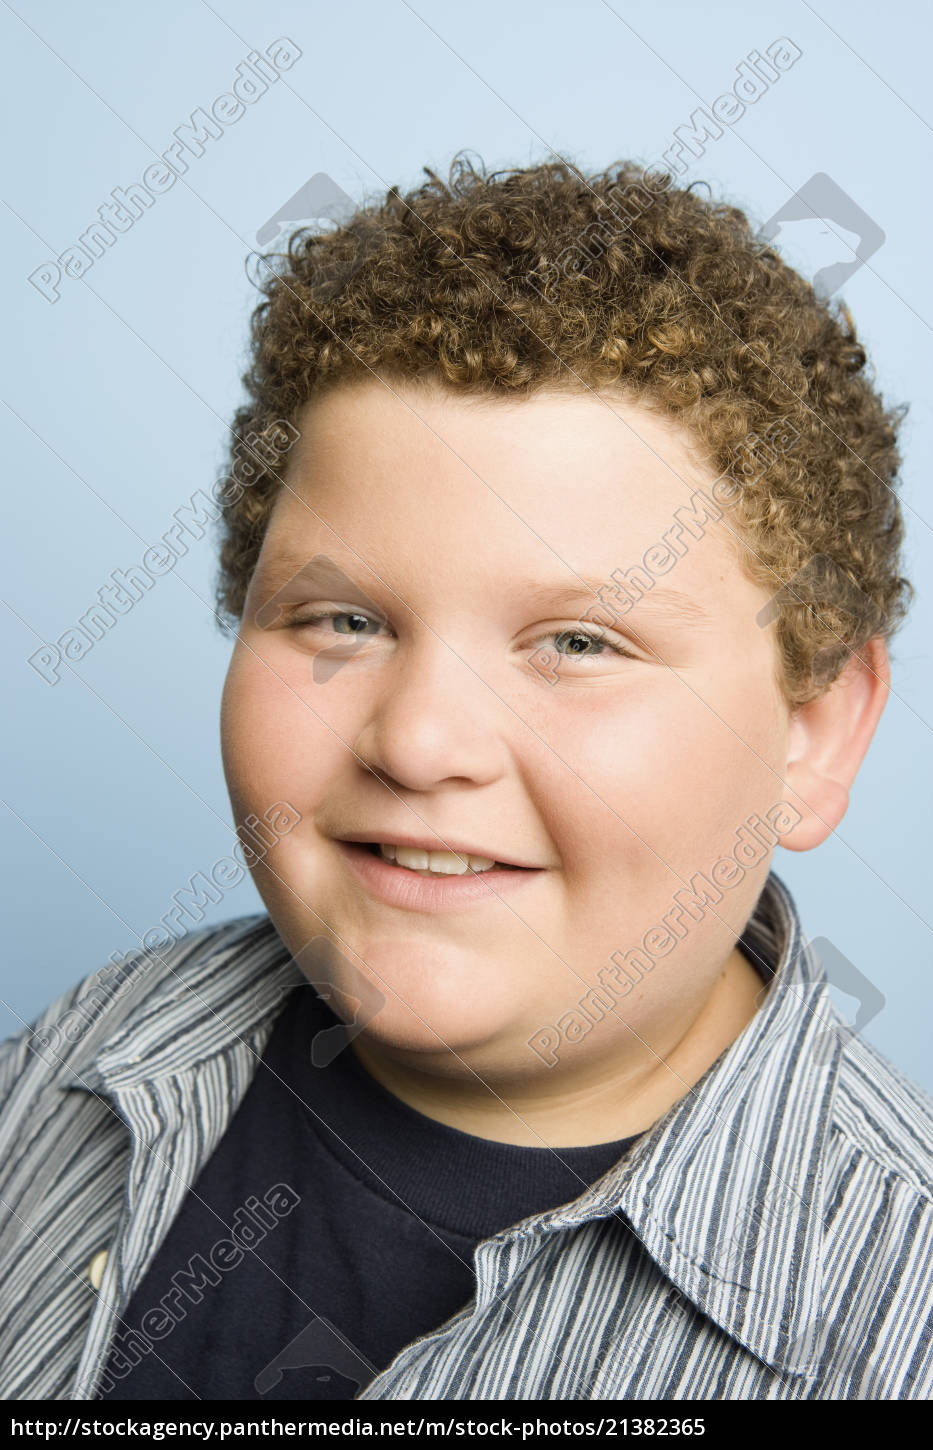 teenage boy smiling